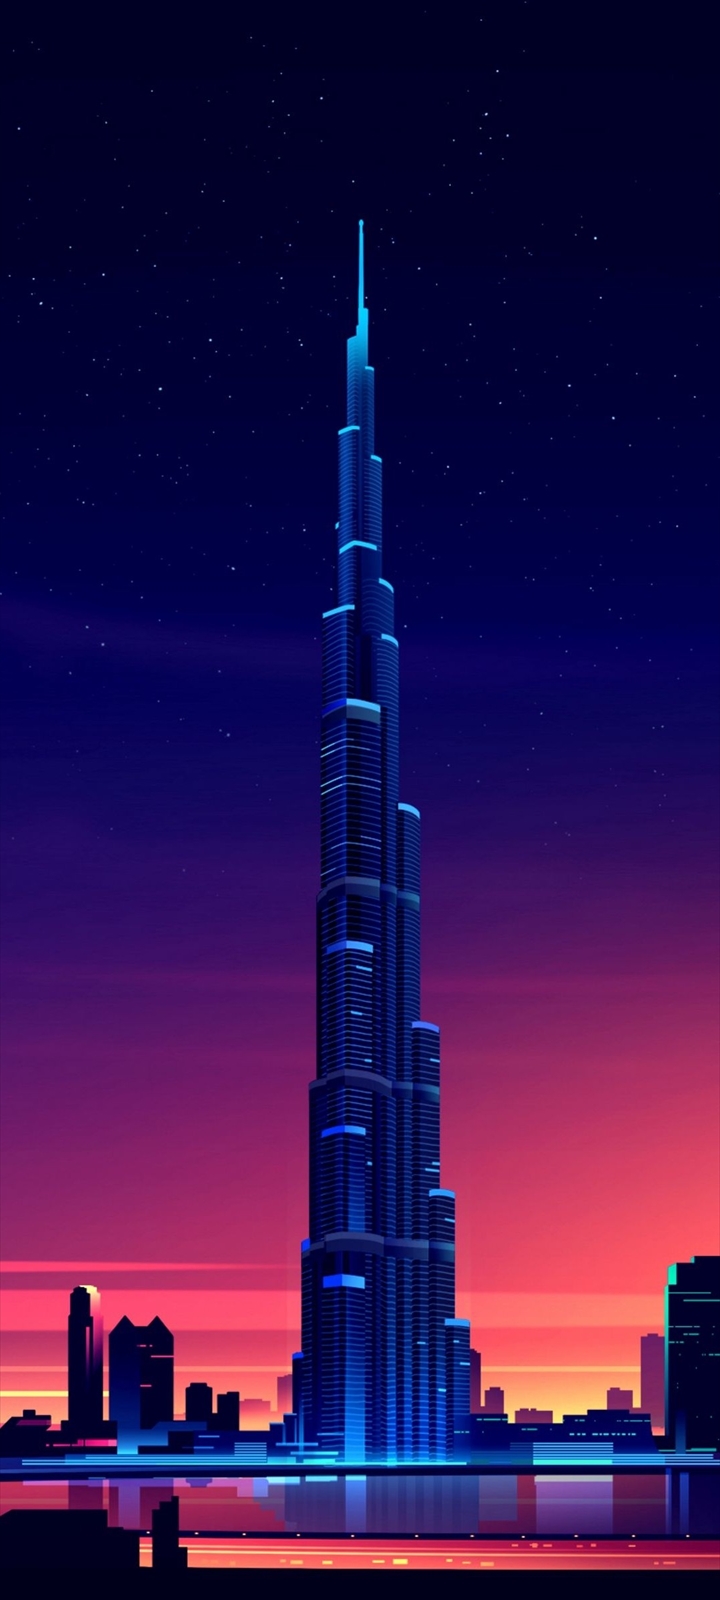 ドバイ 世界一高いビル ブルジュ ハリファ 高さは8メートル Moto G8 Power Lite Androidスマホ壁紙 待ち受け スマラン